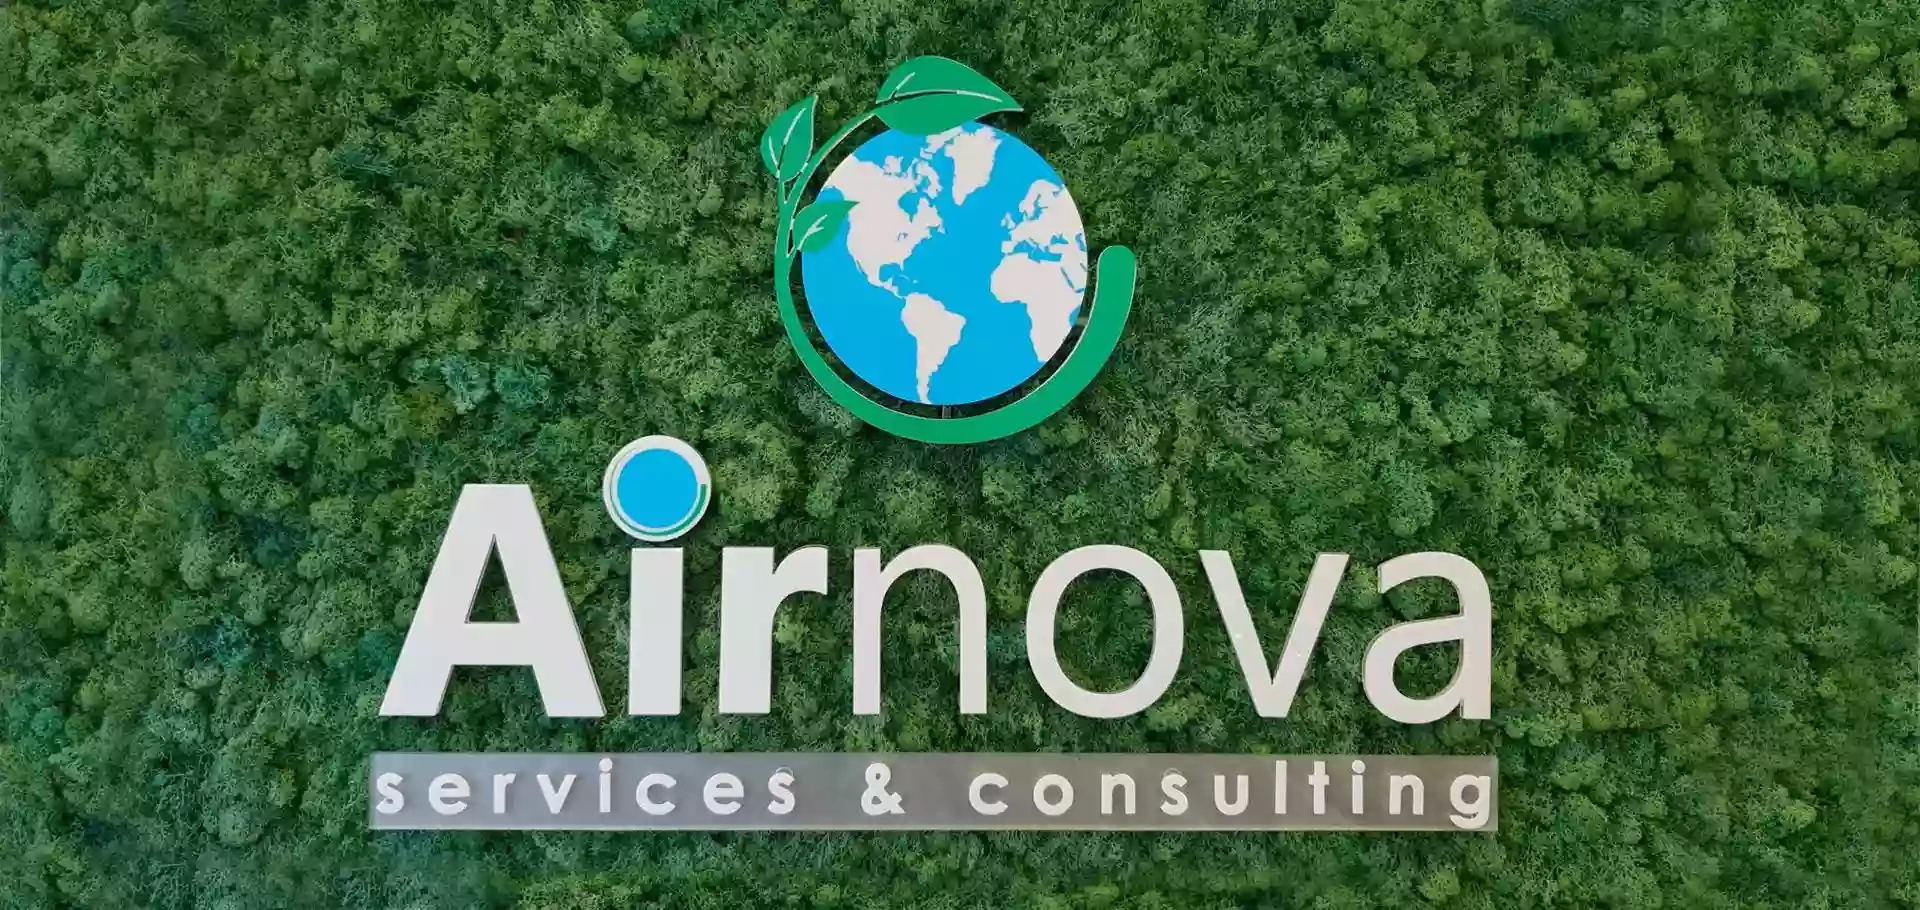 Airnova - Centro Assistenza Tecnico Caldaie Chaffoteaux e Climatizzatori Samsung